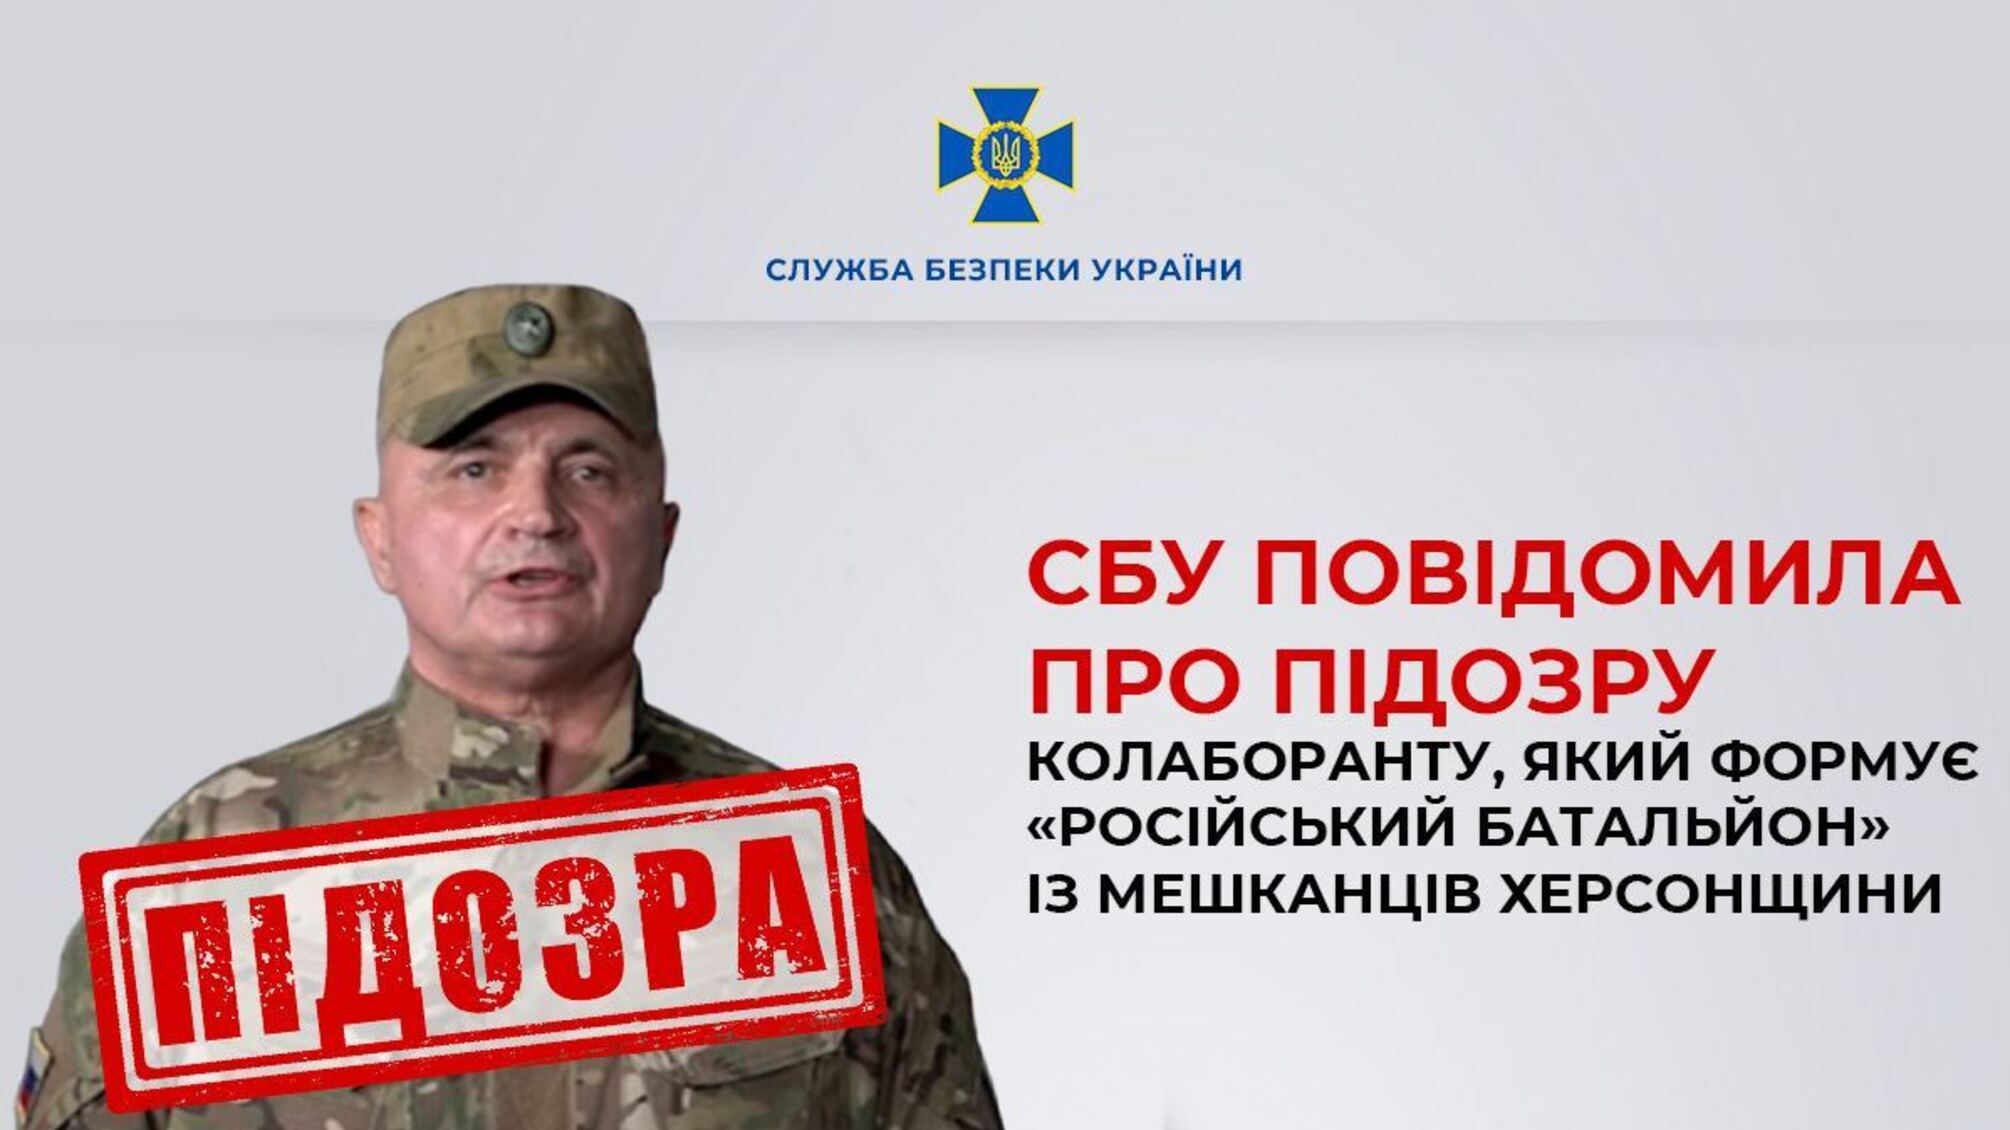 Формує 'російський батальйон' із жителів Херсонщини: СБУ повідомила про підозру зраднику